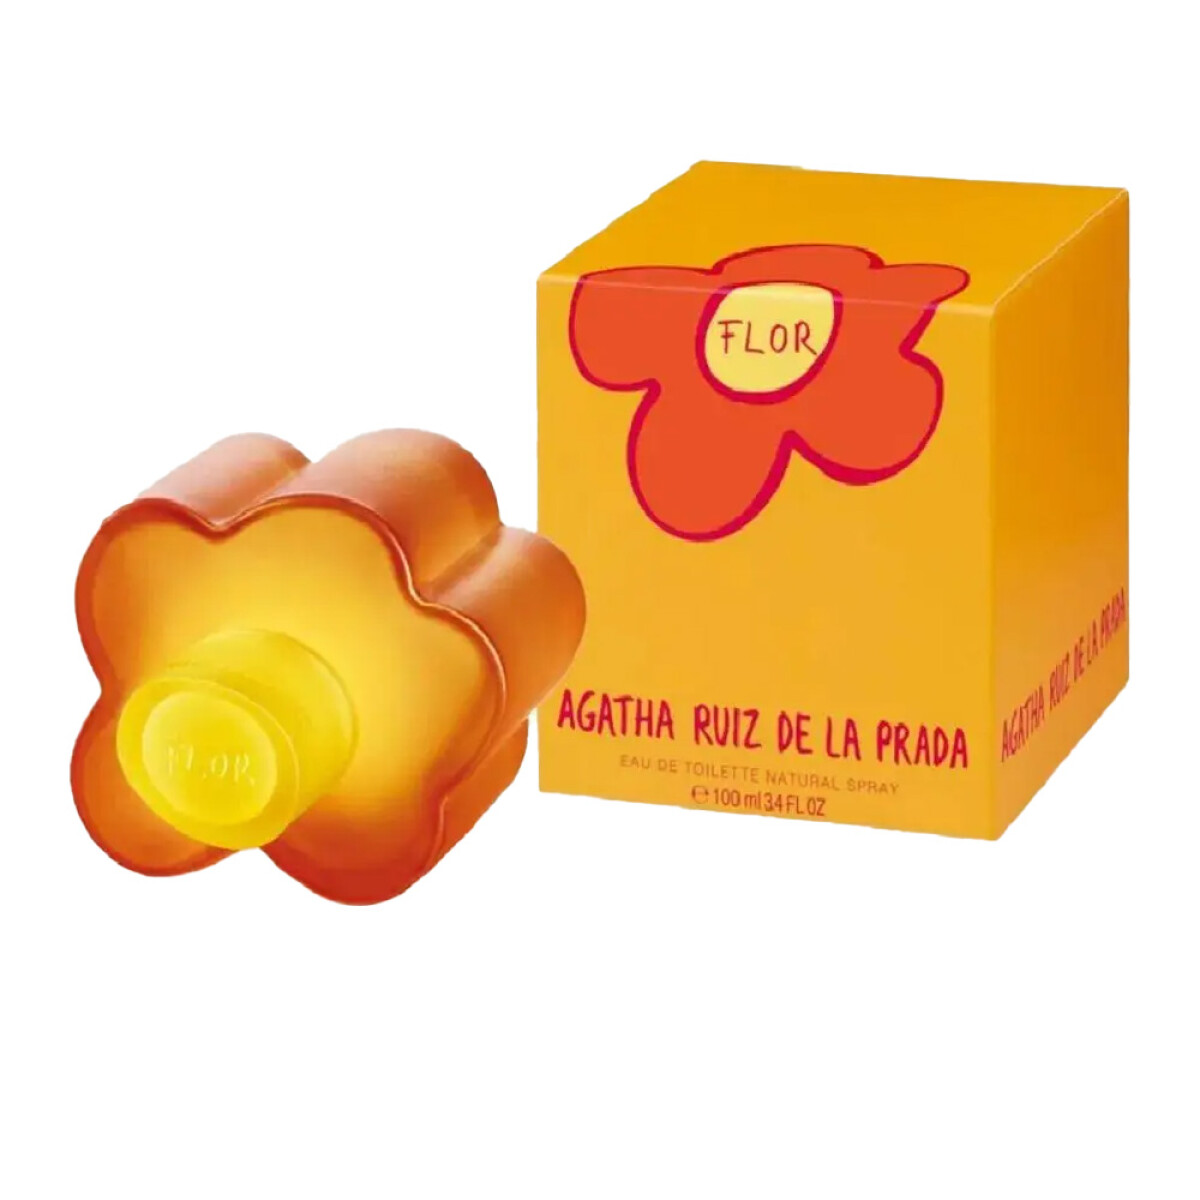 Perfume Agatha Ruiz de la Prada Flor Edt 50ML - 001 